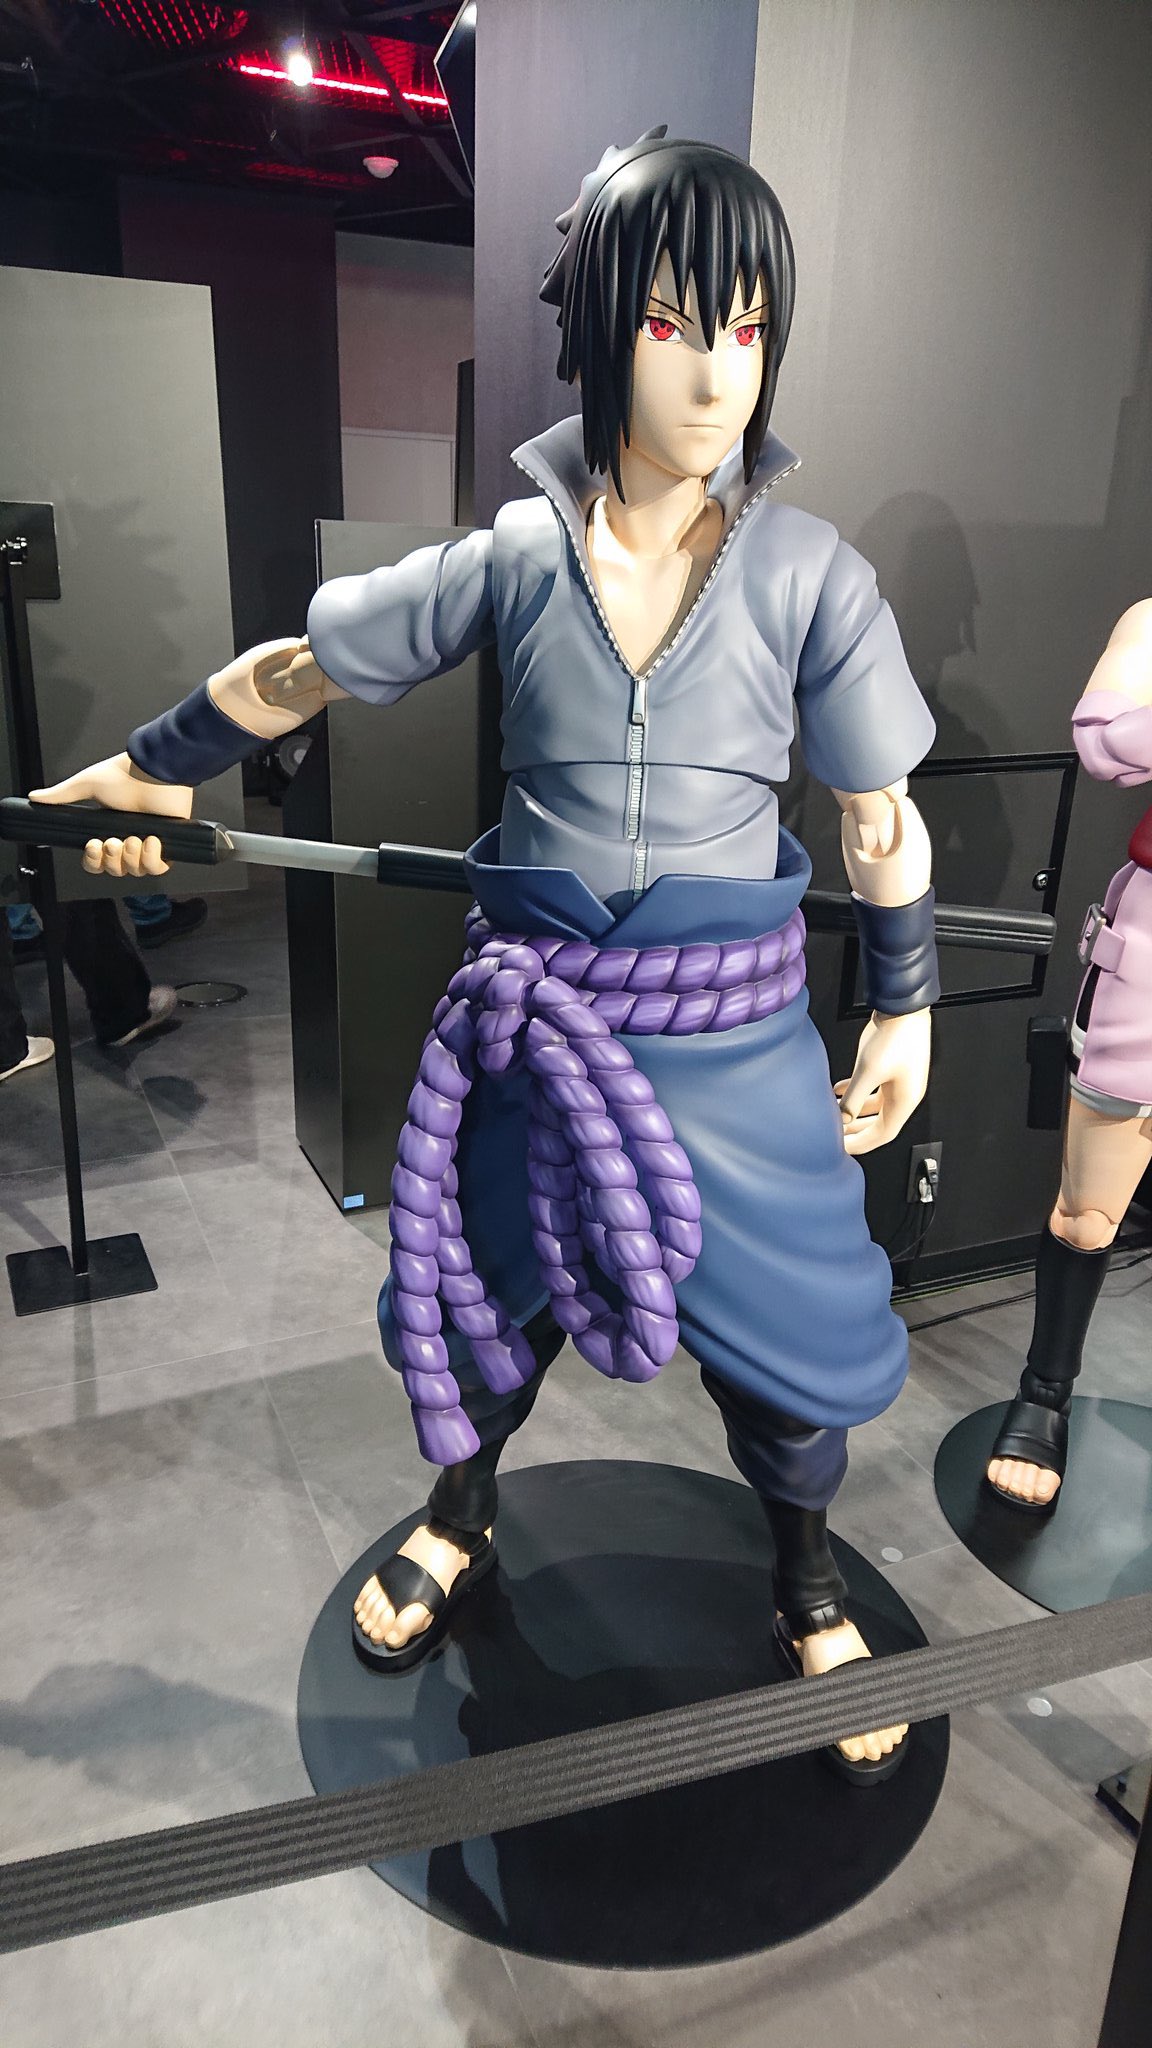 Naruto - Sasuke Uchiha Grandista Manga Dimensions Figurine NEW